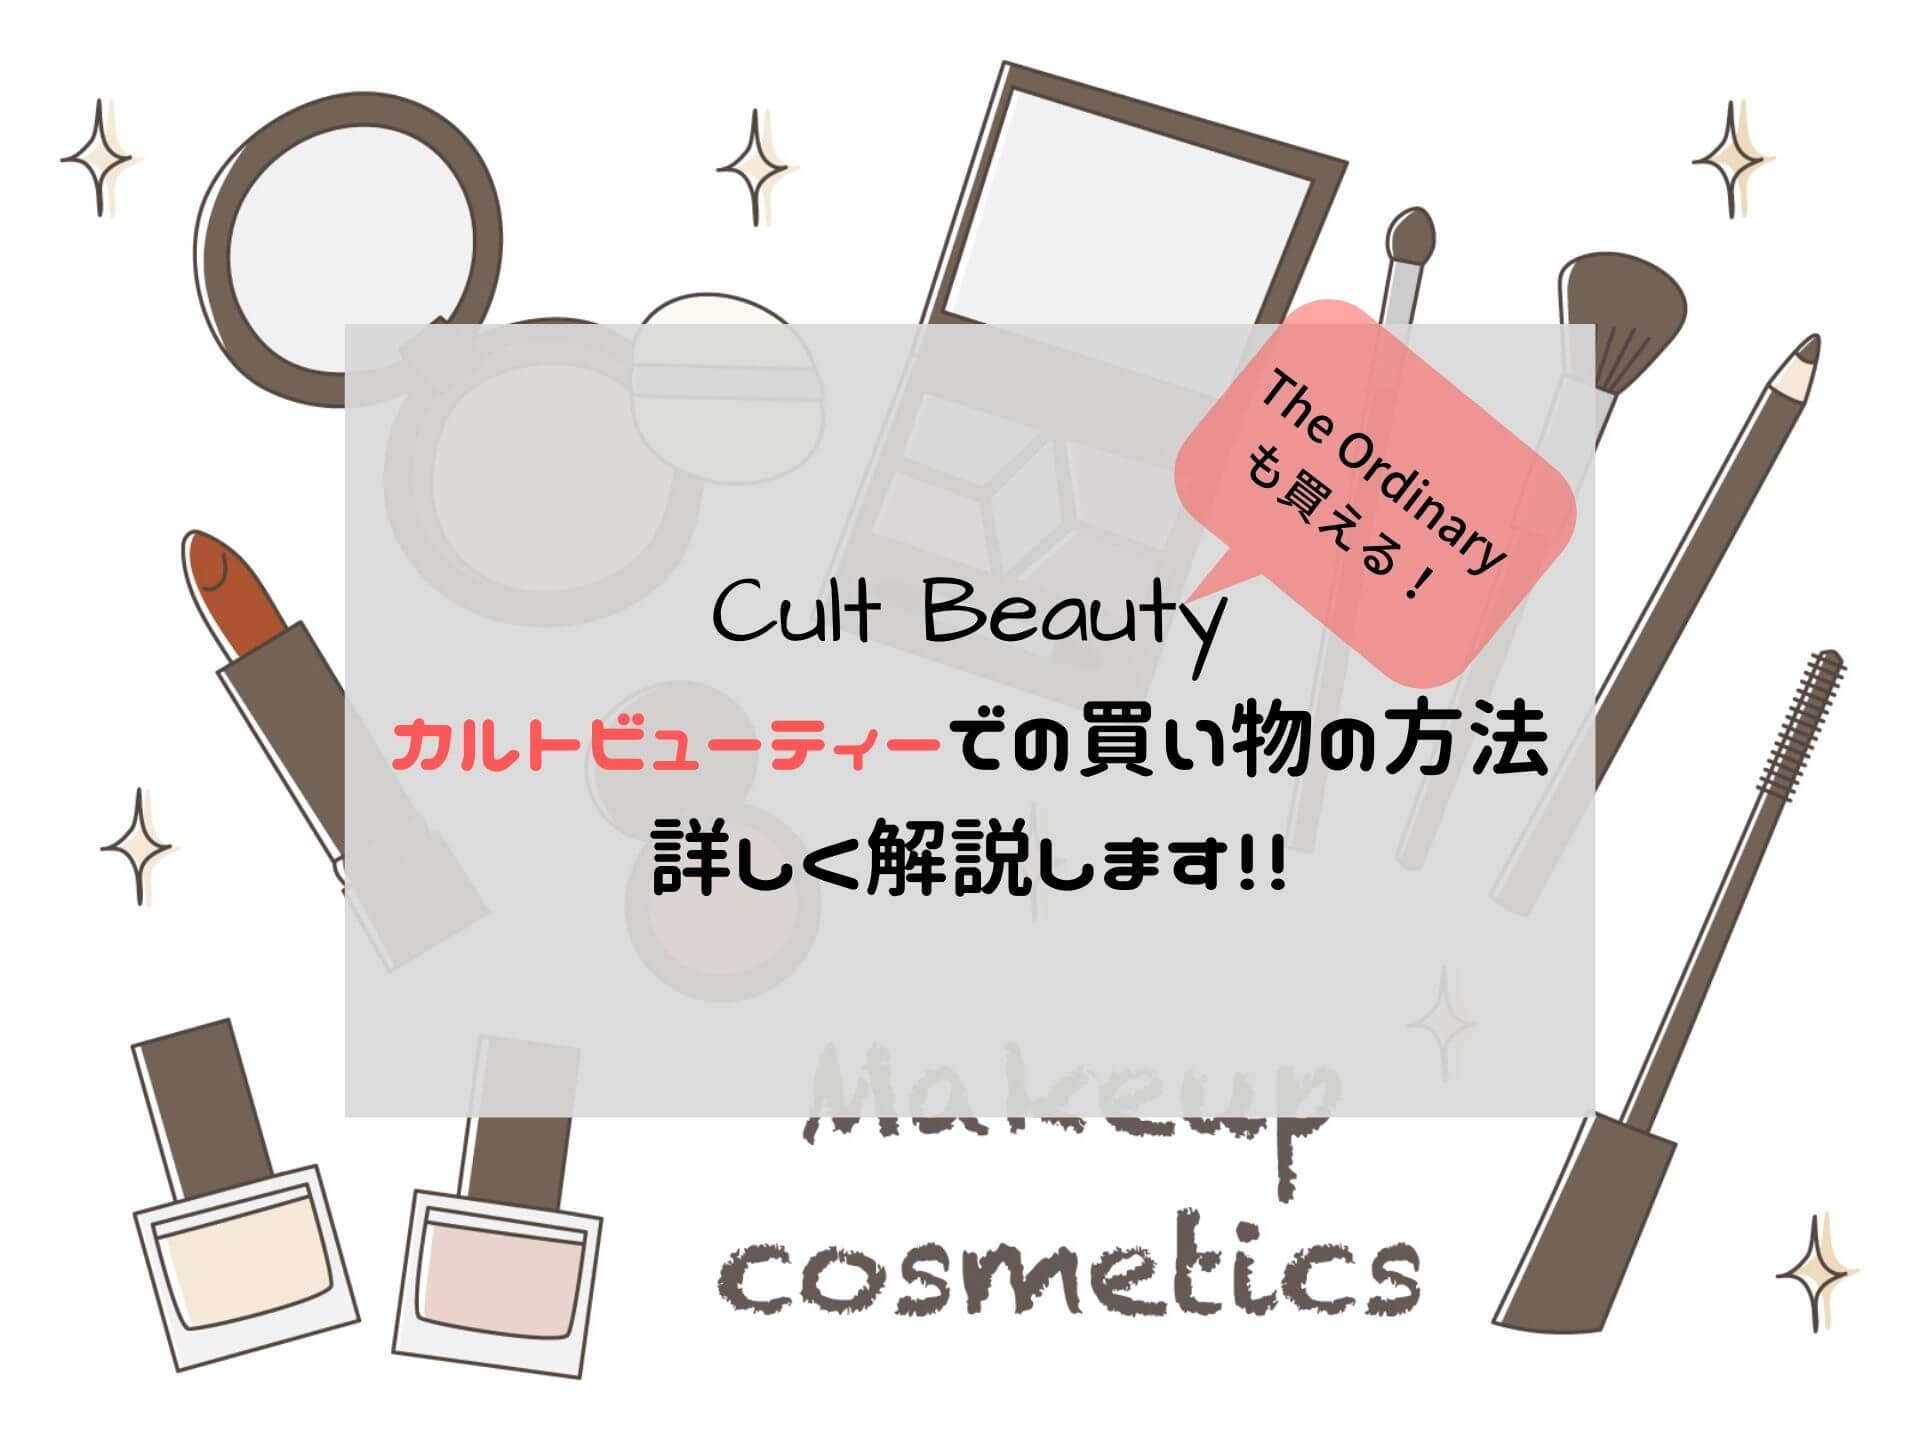 【購入方法】Cult Beauty(カルトビューティー)での会員登録、買い方を詳しく解説